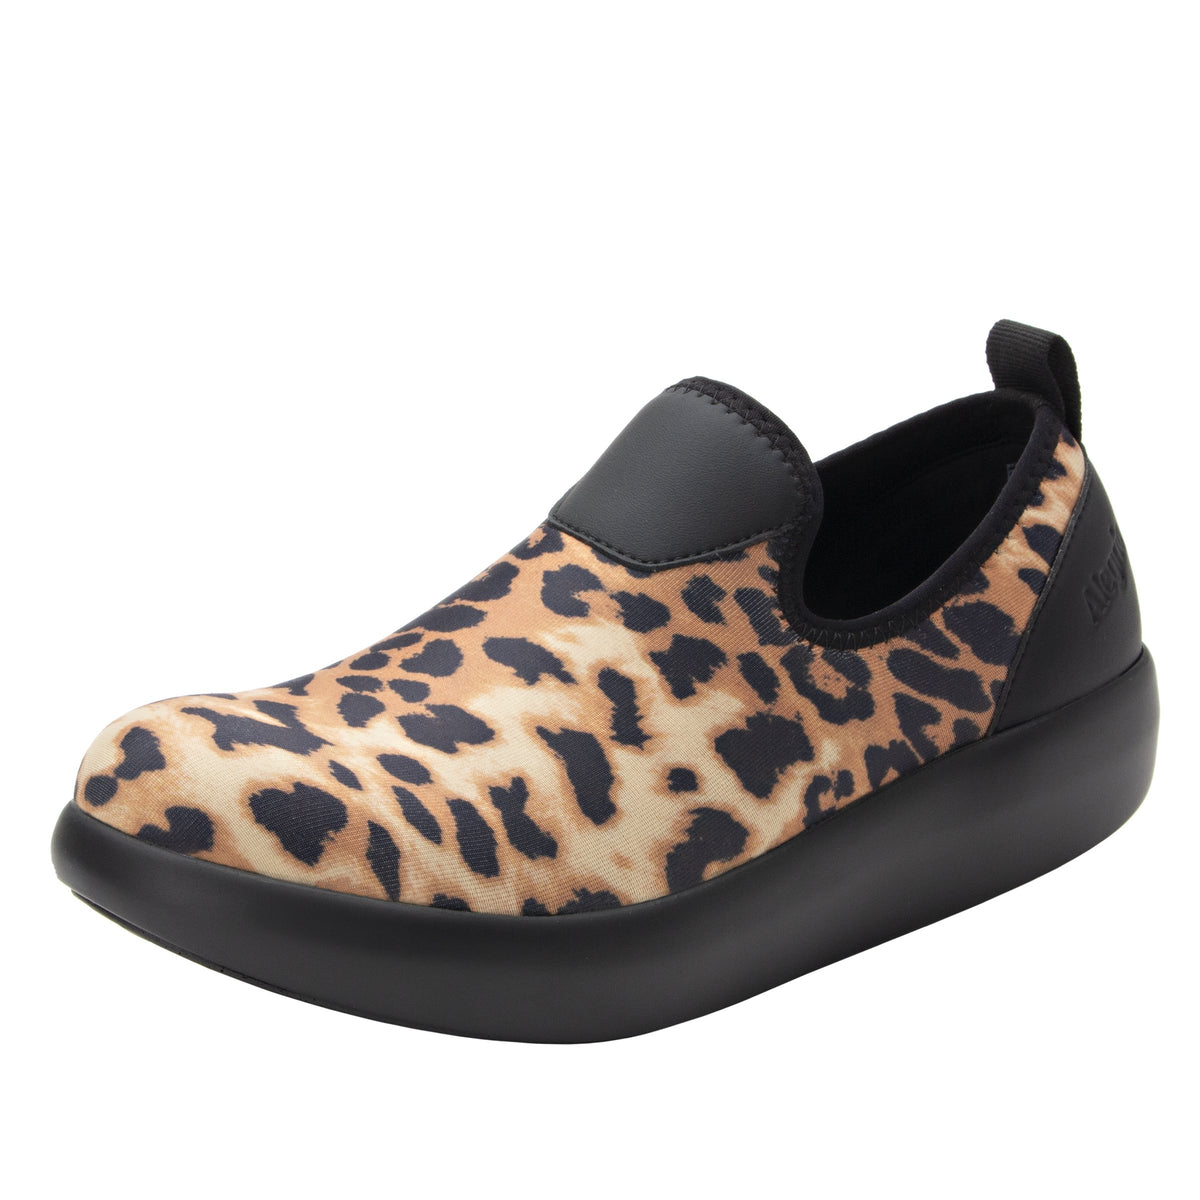 Eden Leopard Shoe - Alegria Shoes